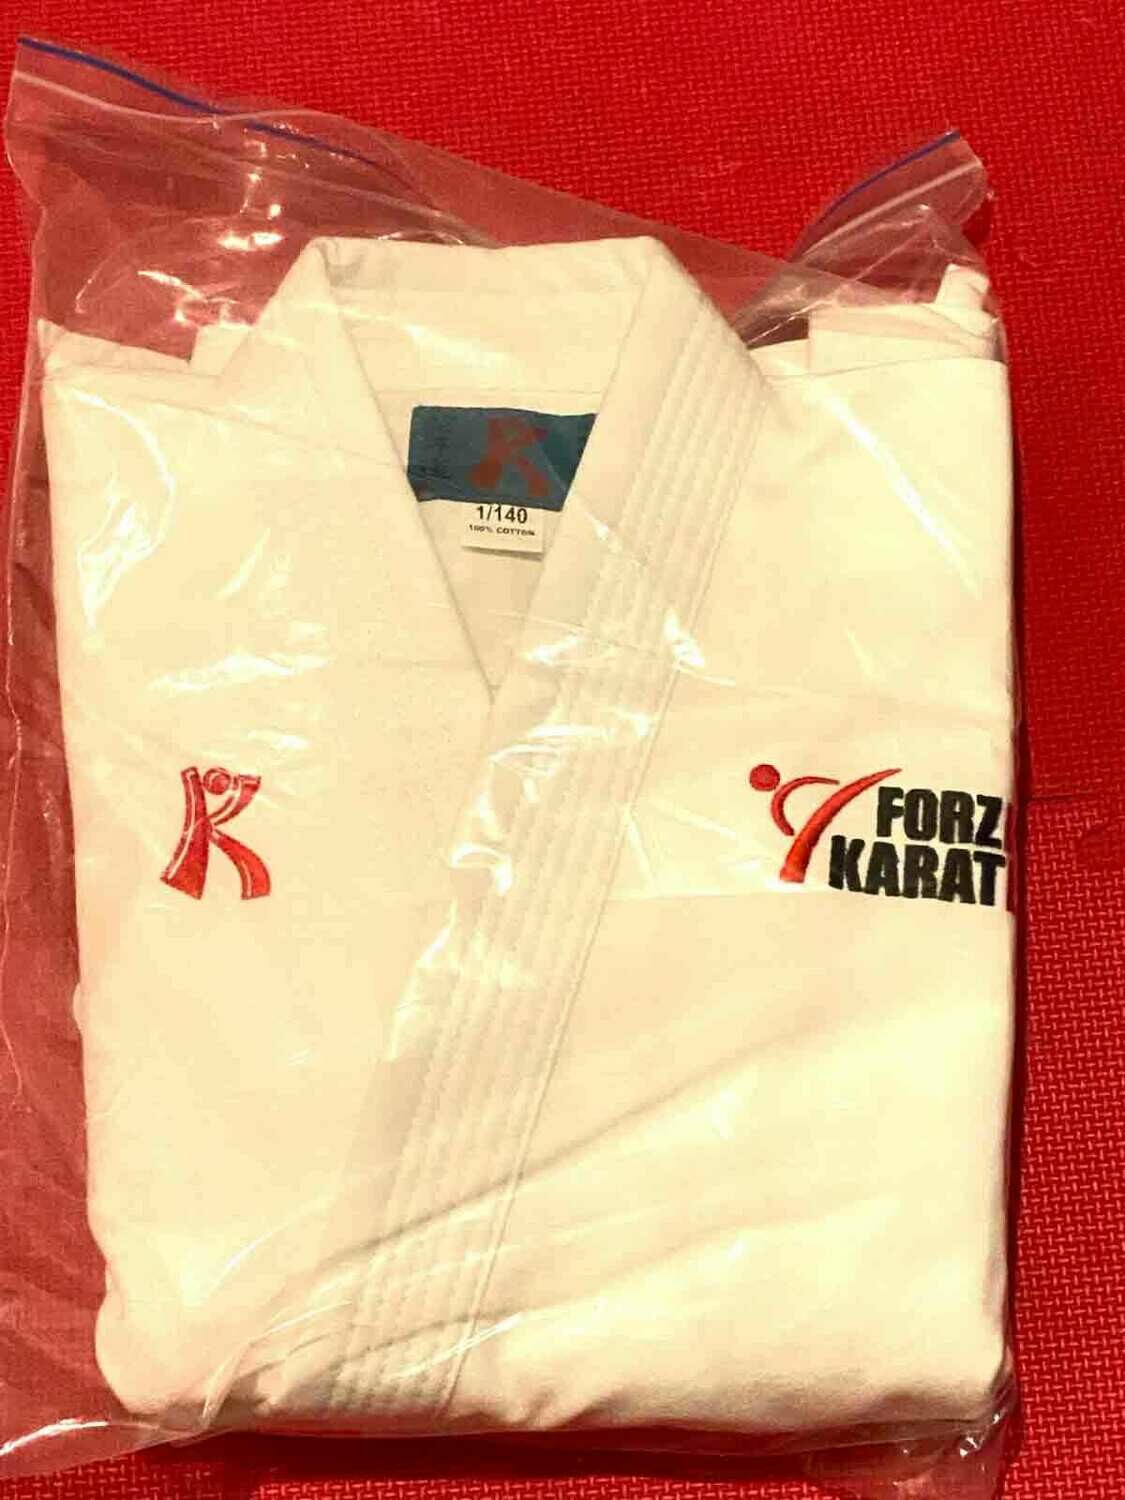 Kata Gi for Karate competition